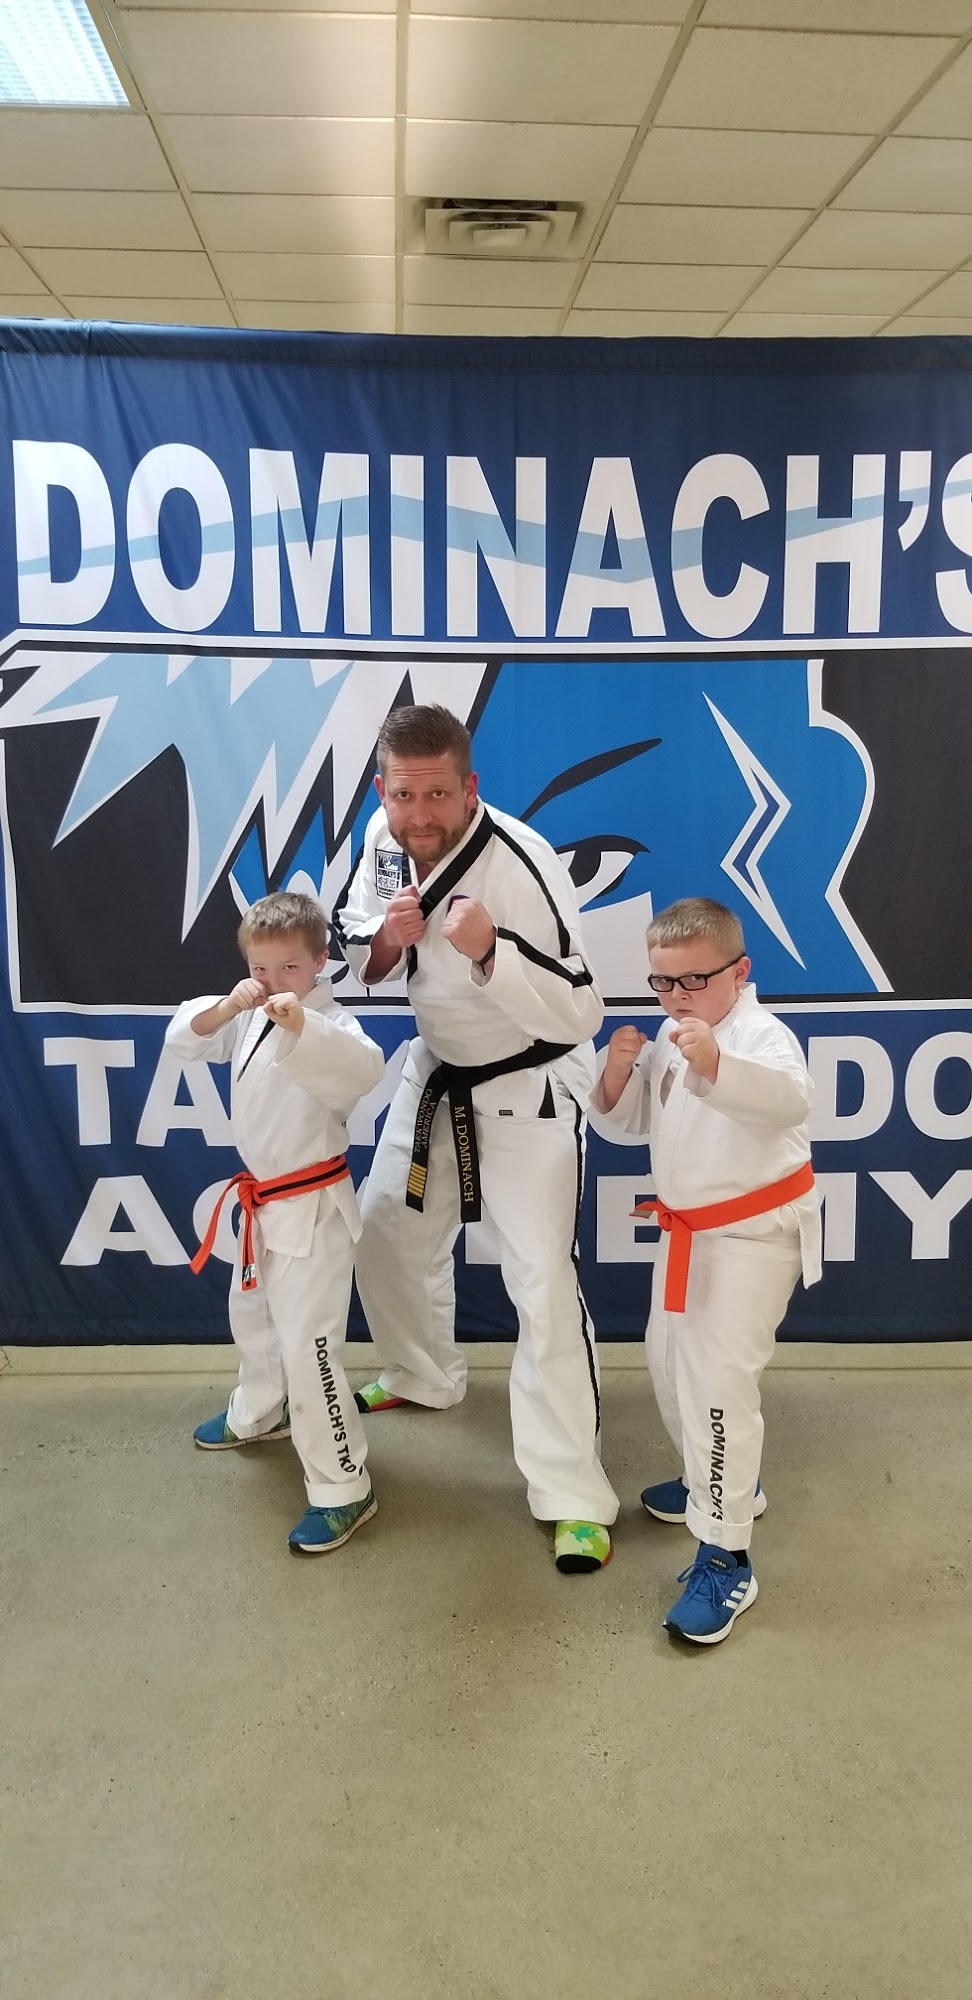 Dominach's Taekwondo Academy